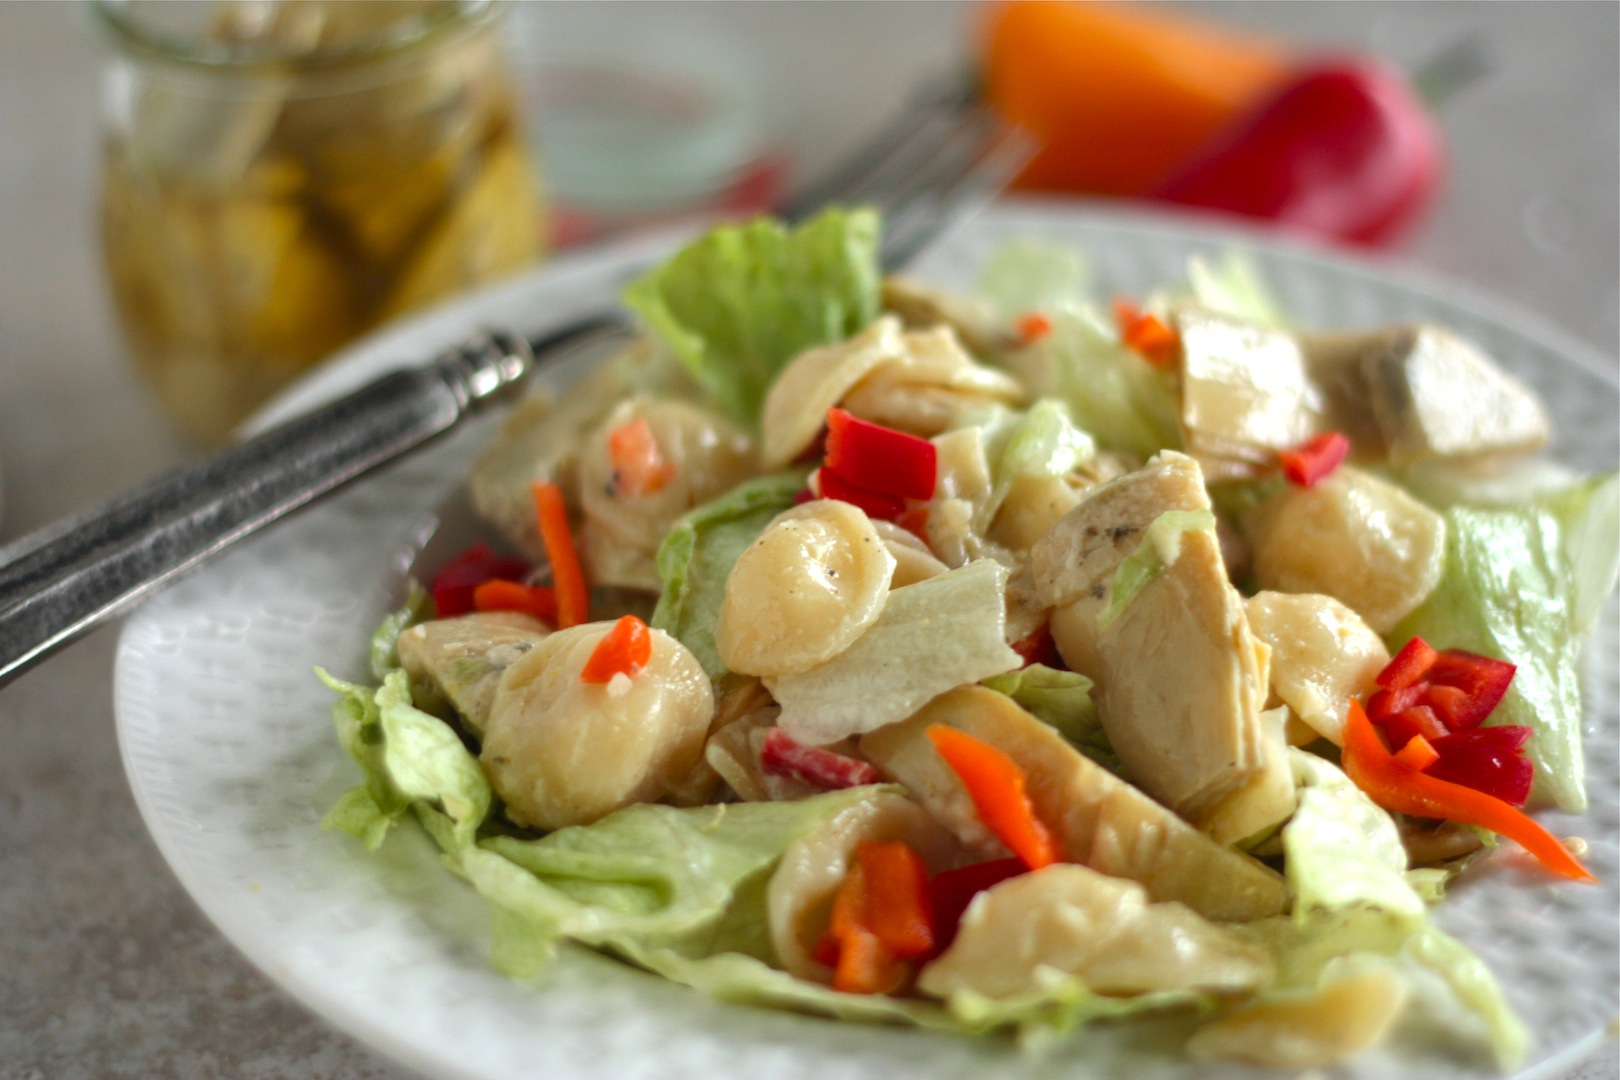 Artichoke Pasta Salad - homemadehome.com